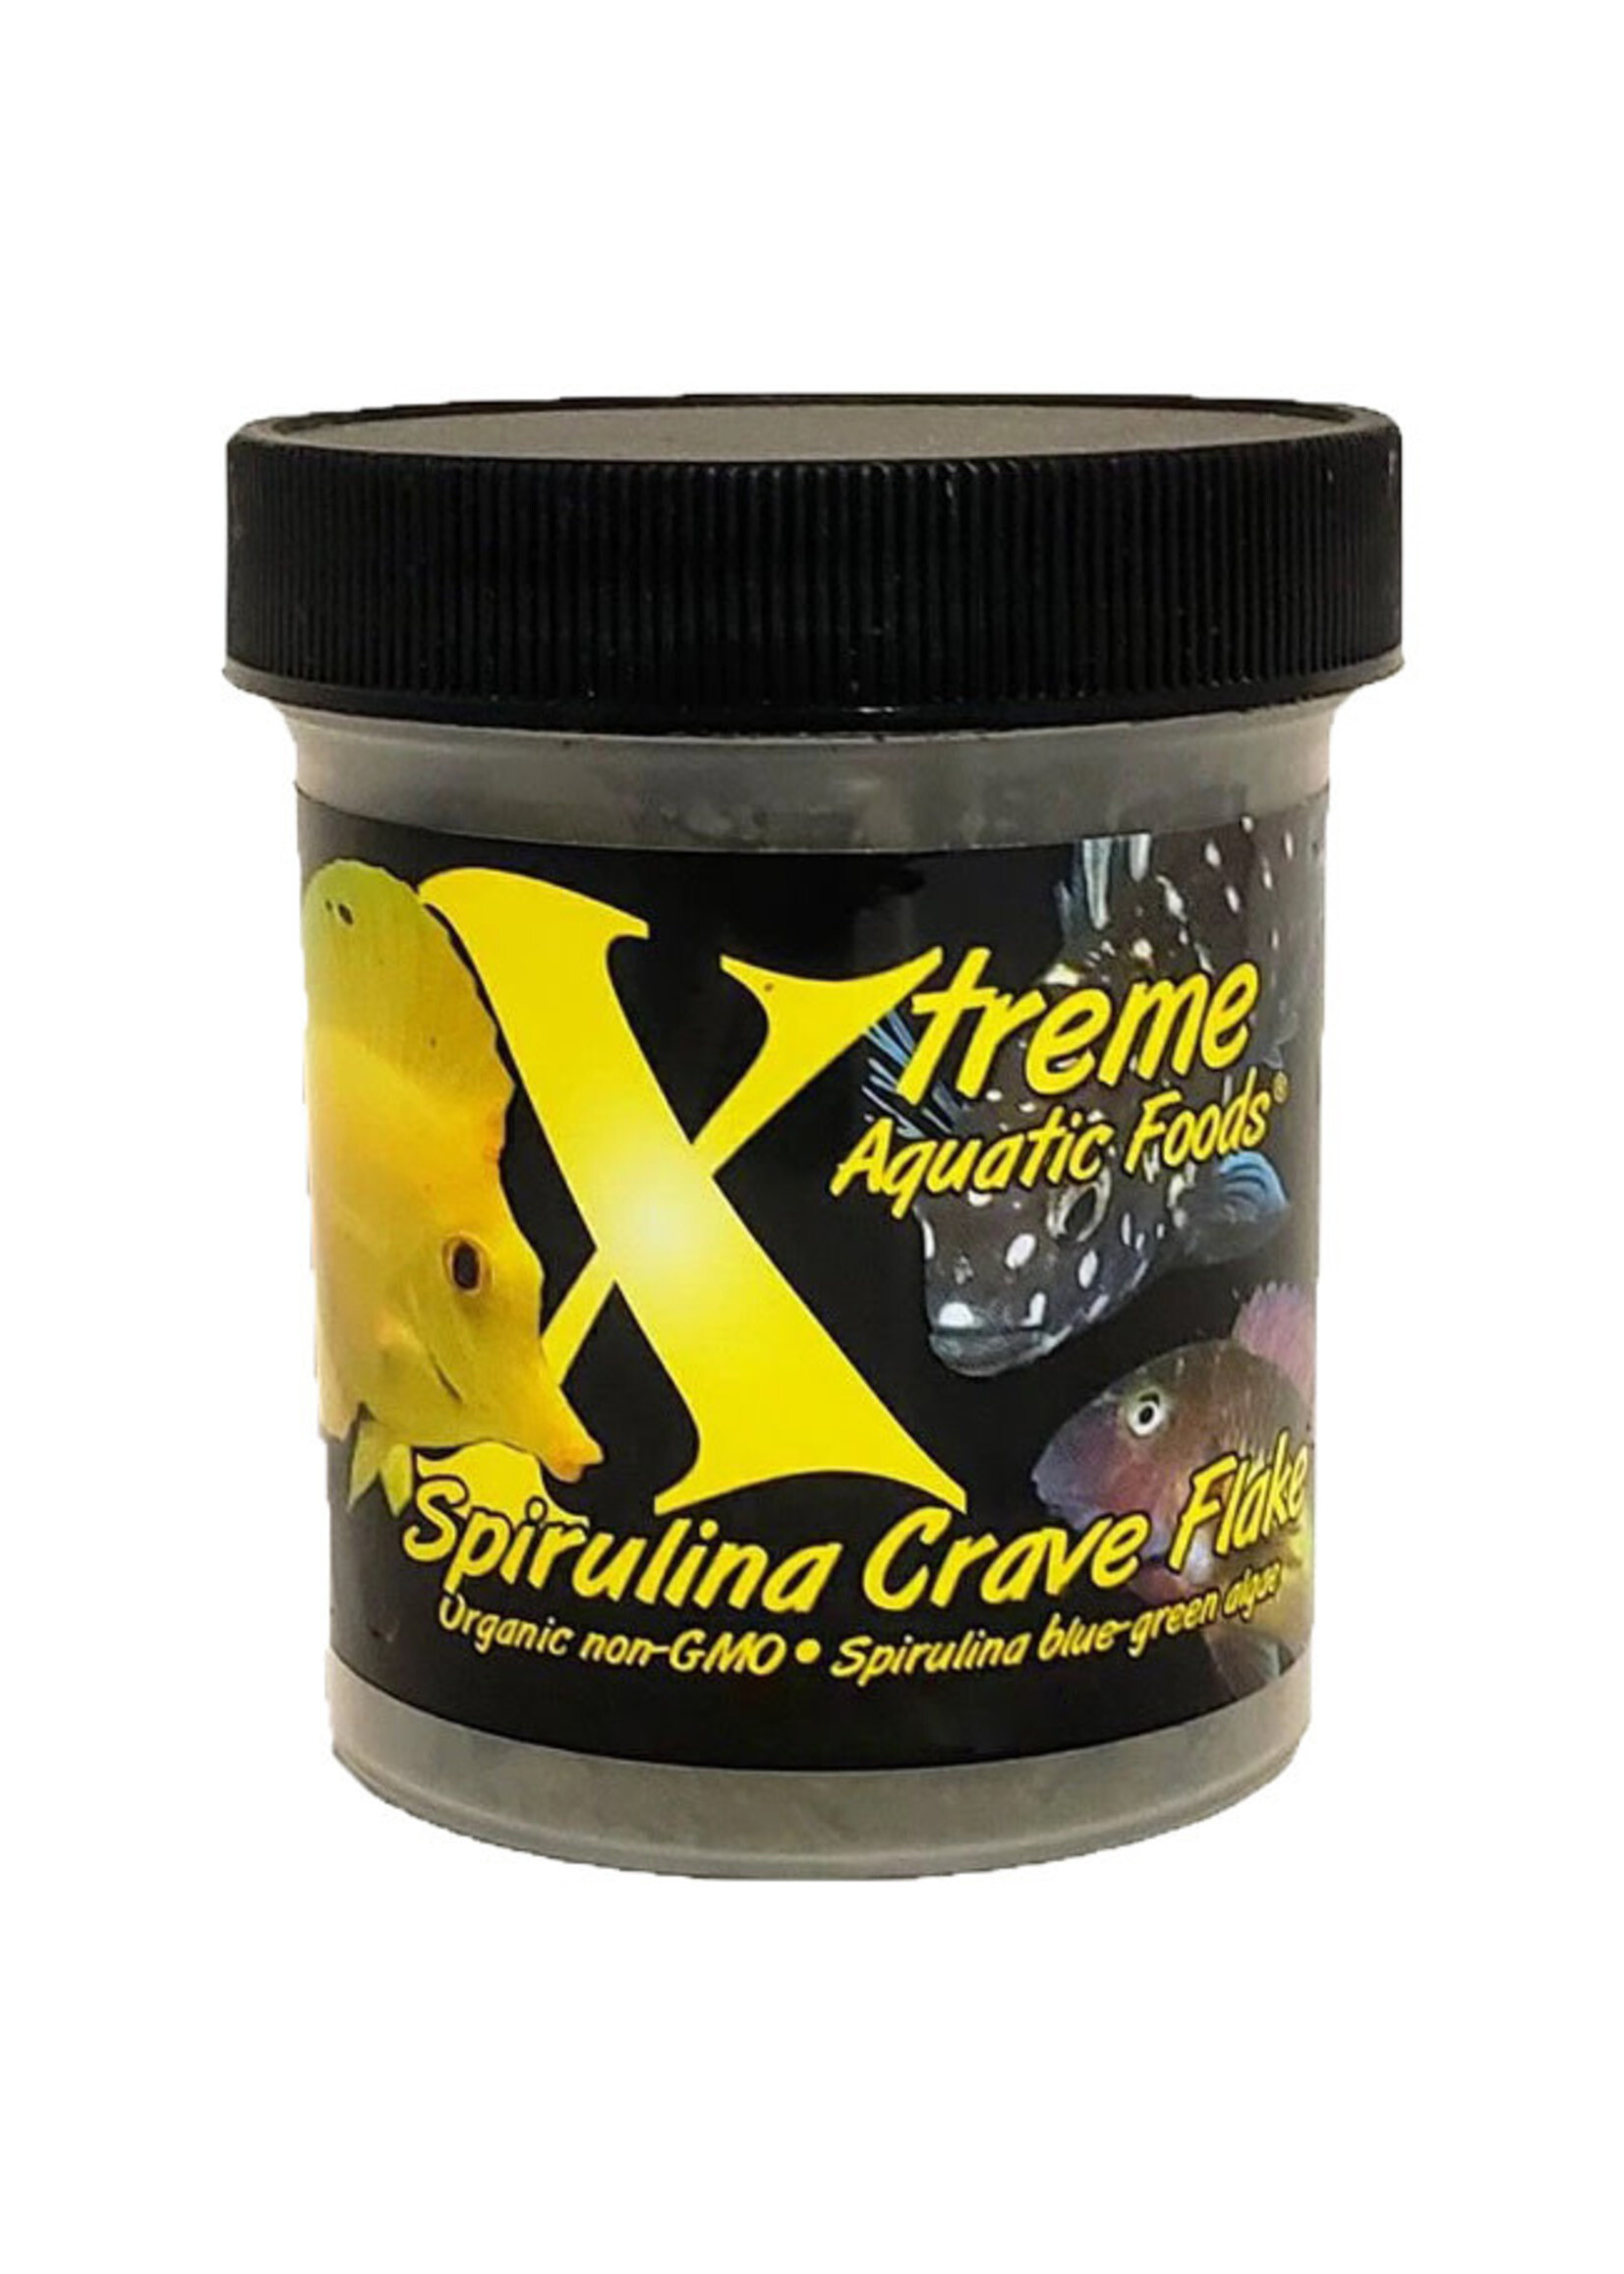 Xtreme Aquatics Xtreme Aquatic Foods Spirulina Crave Flake